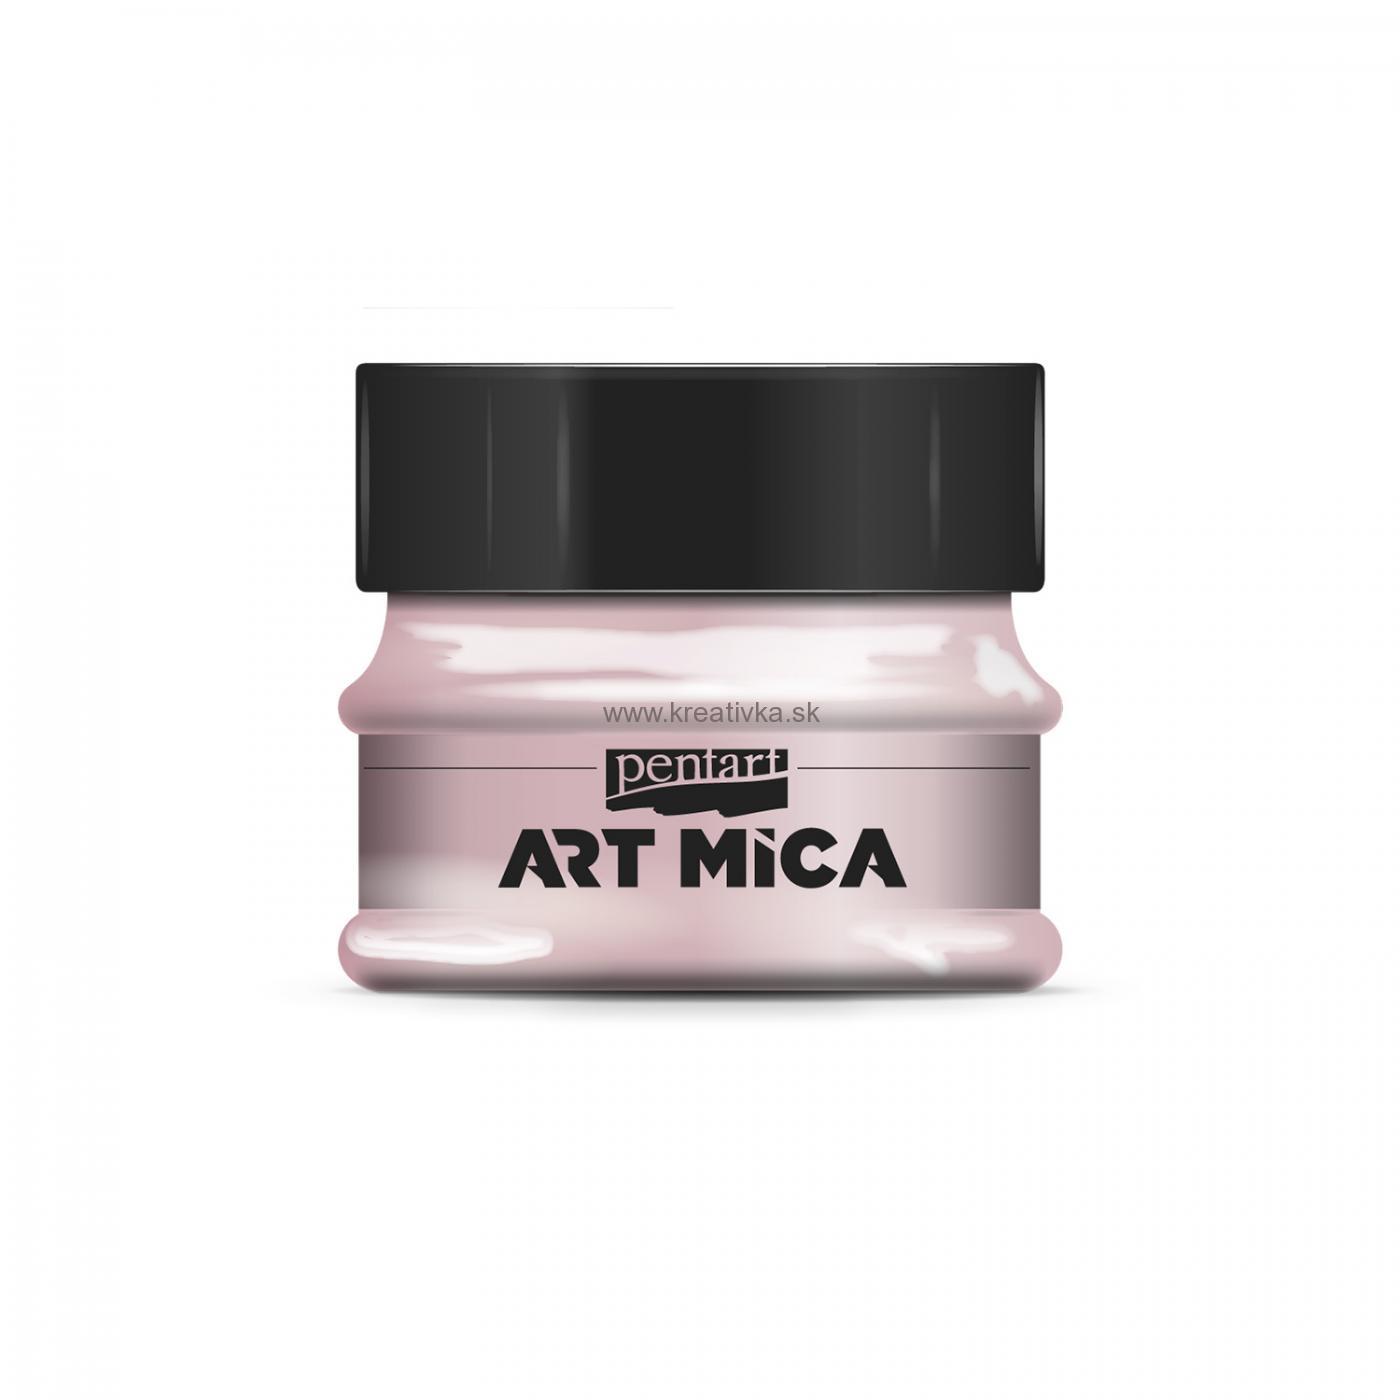 ART MICA minerálny práškový pigment, 9g, marhuľovo ružová